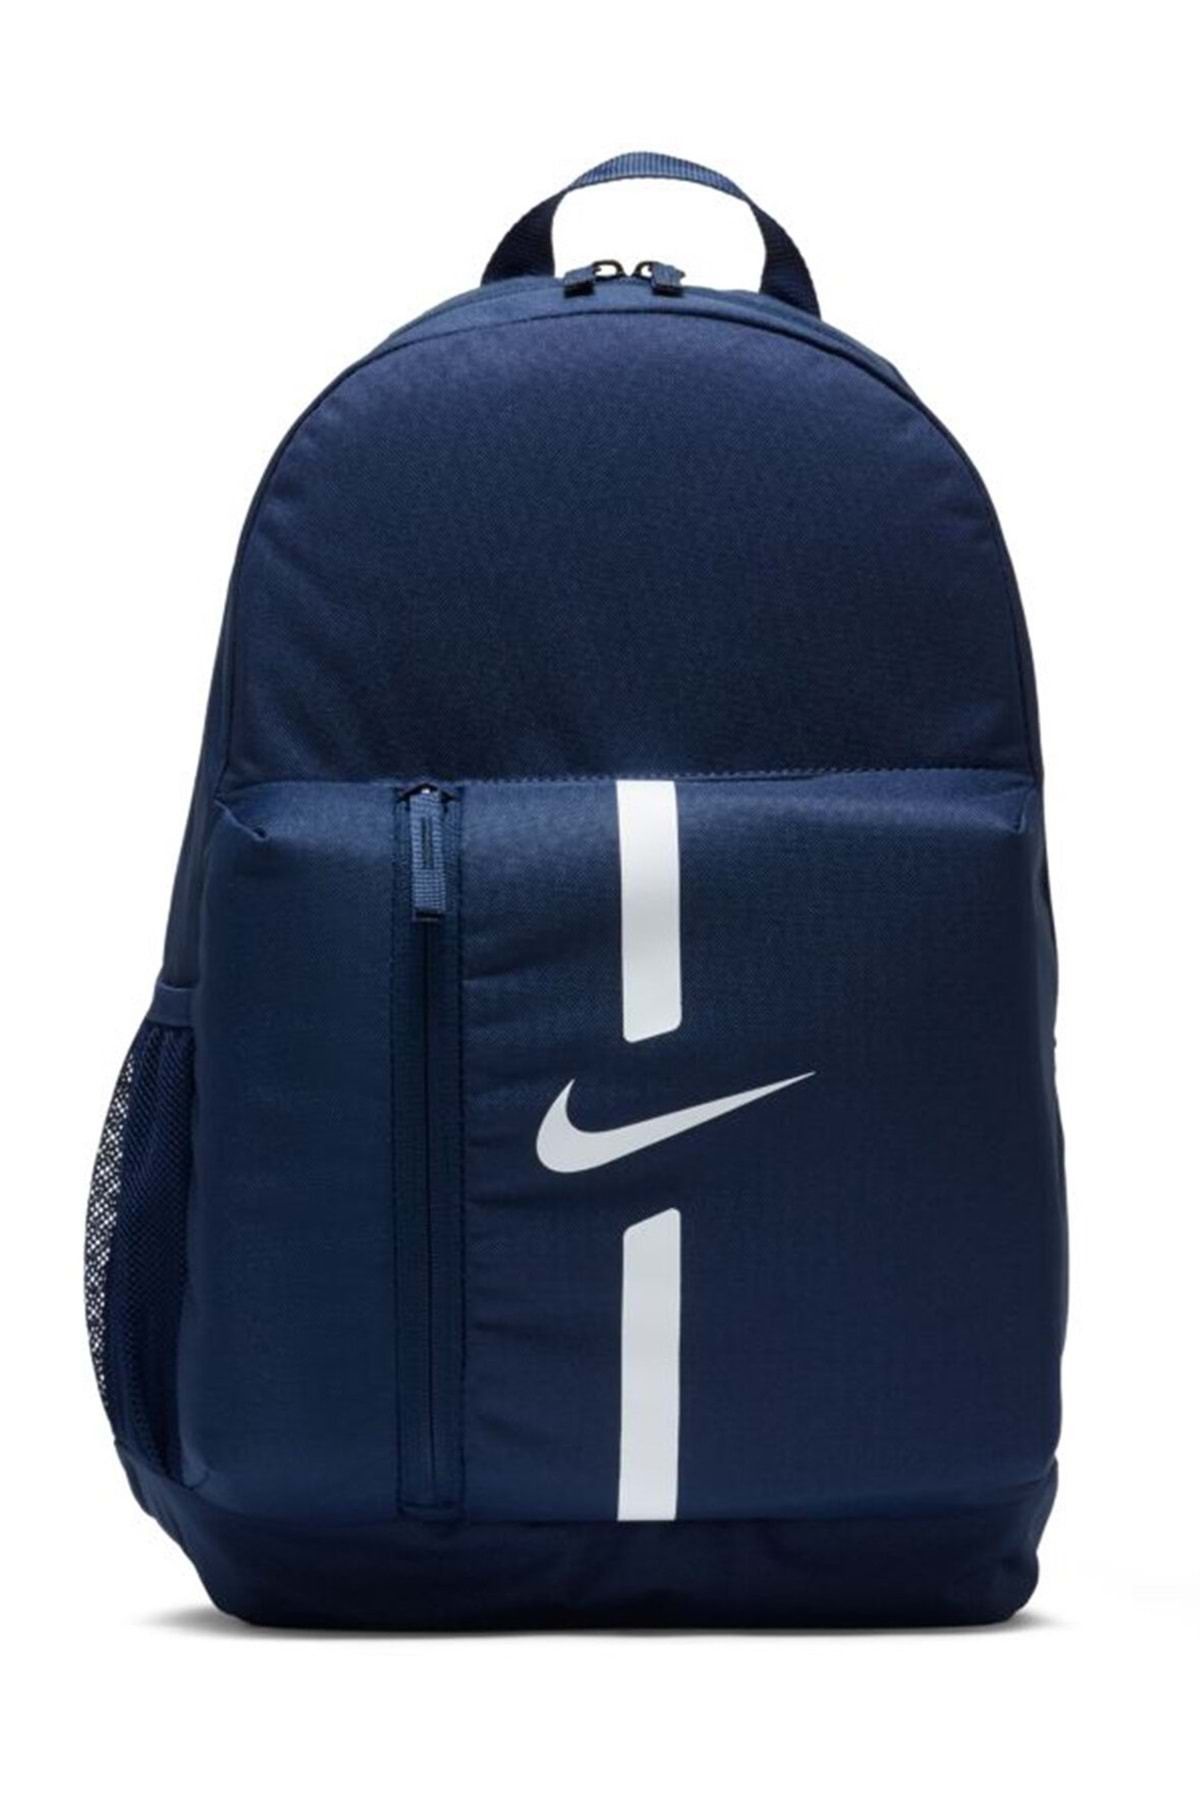 Nike Academy Team DA2571-411 Backpack Sırt Çantası Unisex Sırt Çantası LACİVERT